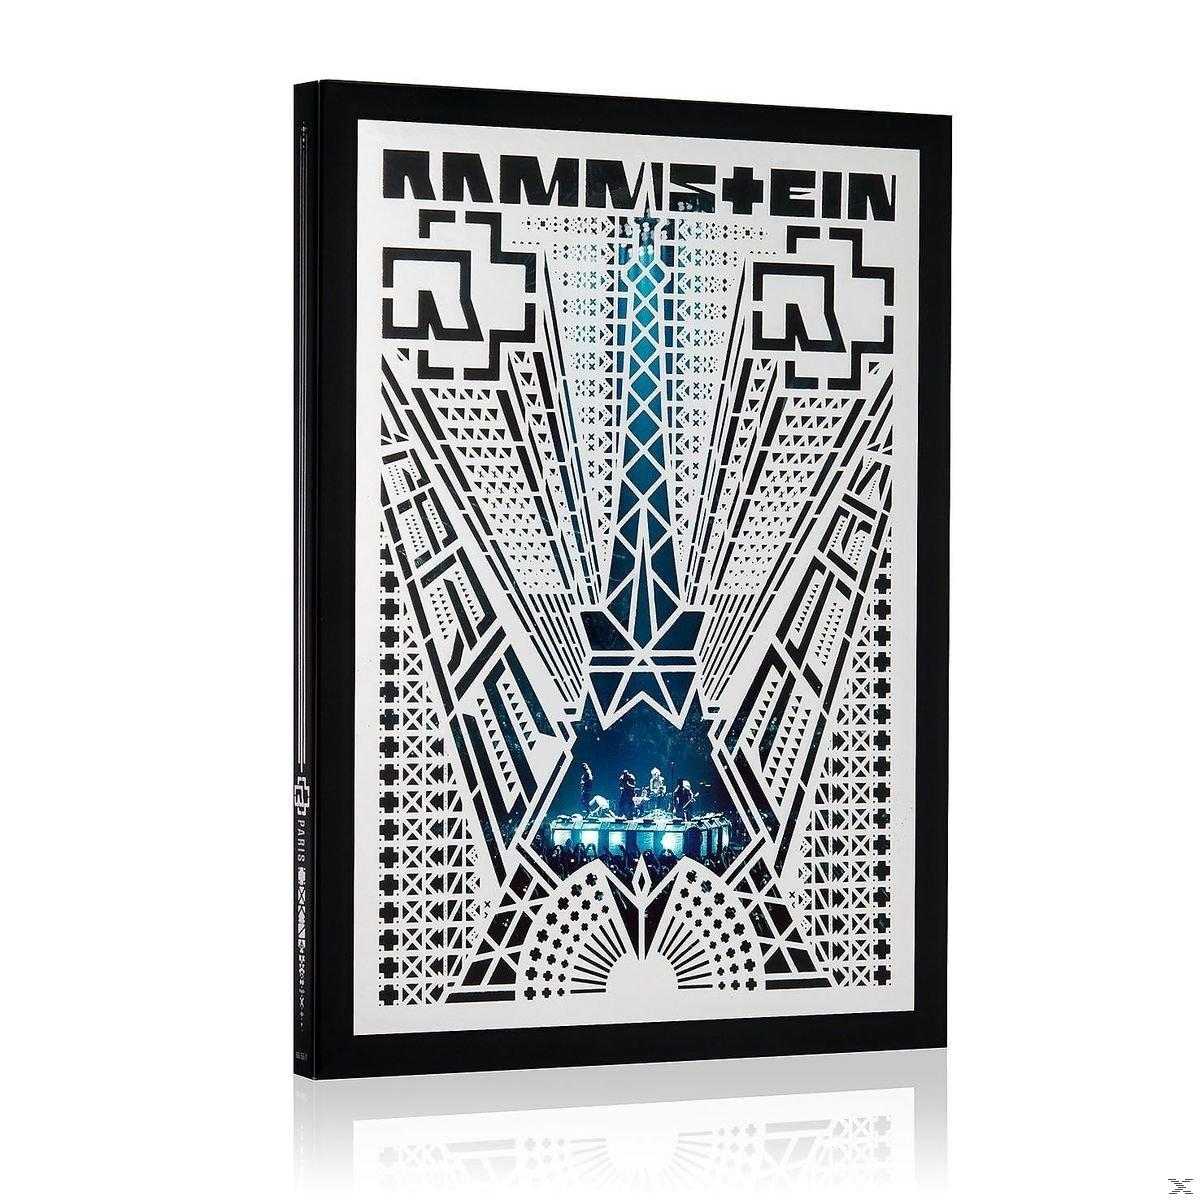 Rammstein - Rammstein: Paris (Standard Edt.) (Blu-ray) 